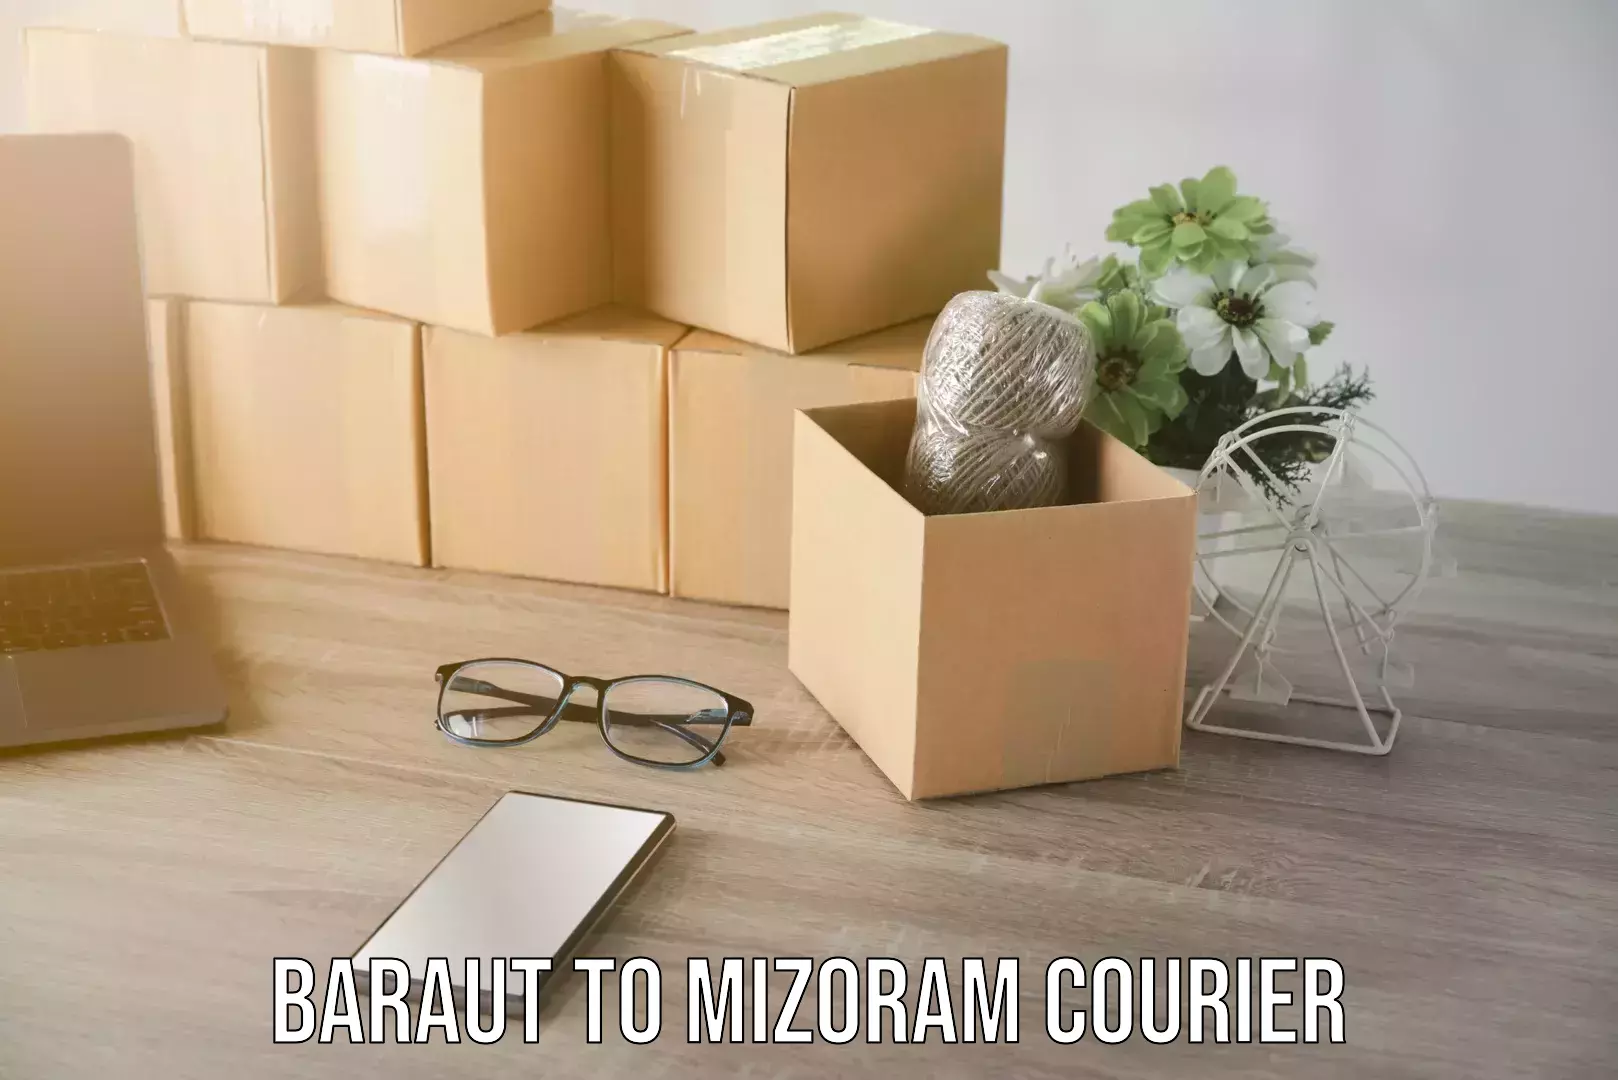 Premium courier solutions Baraut to Mizoram